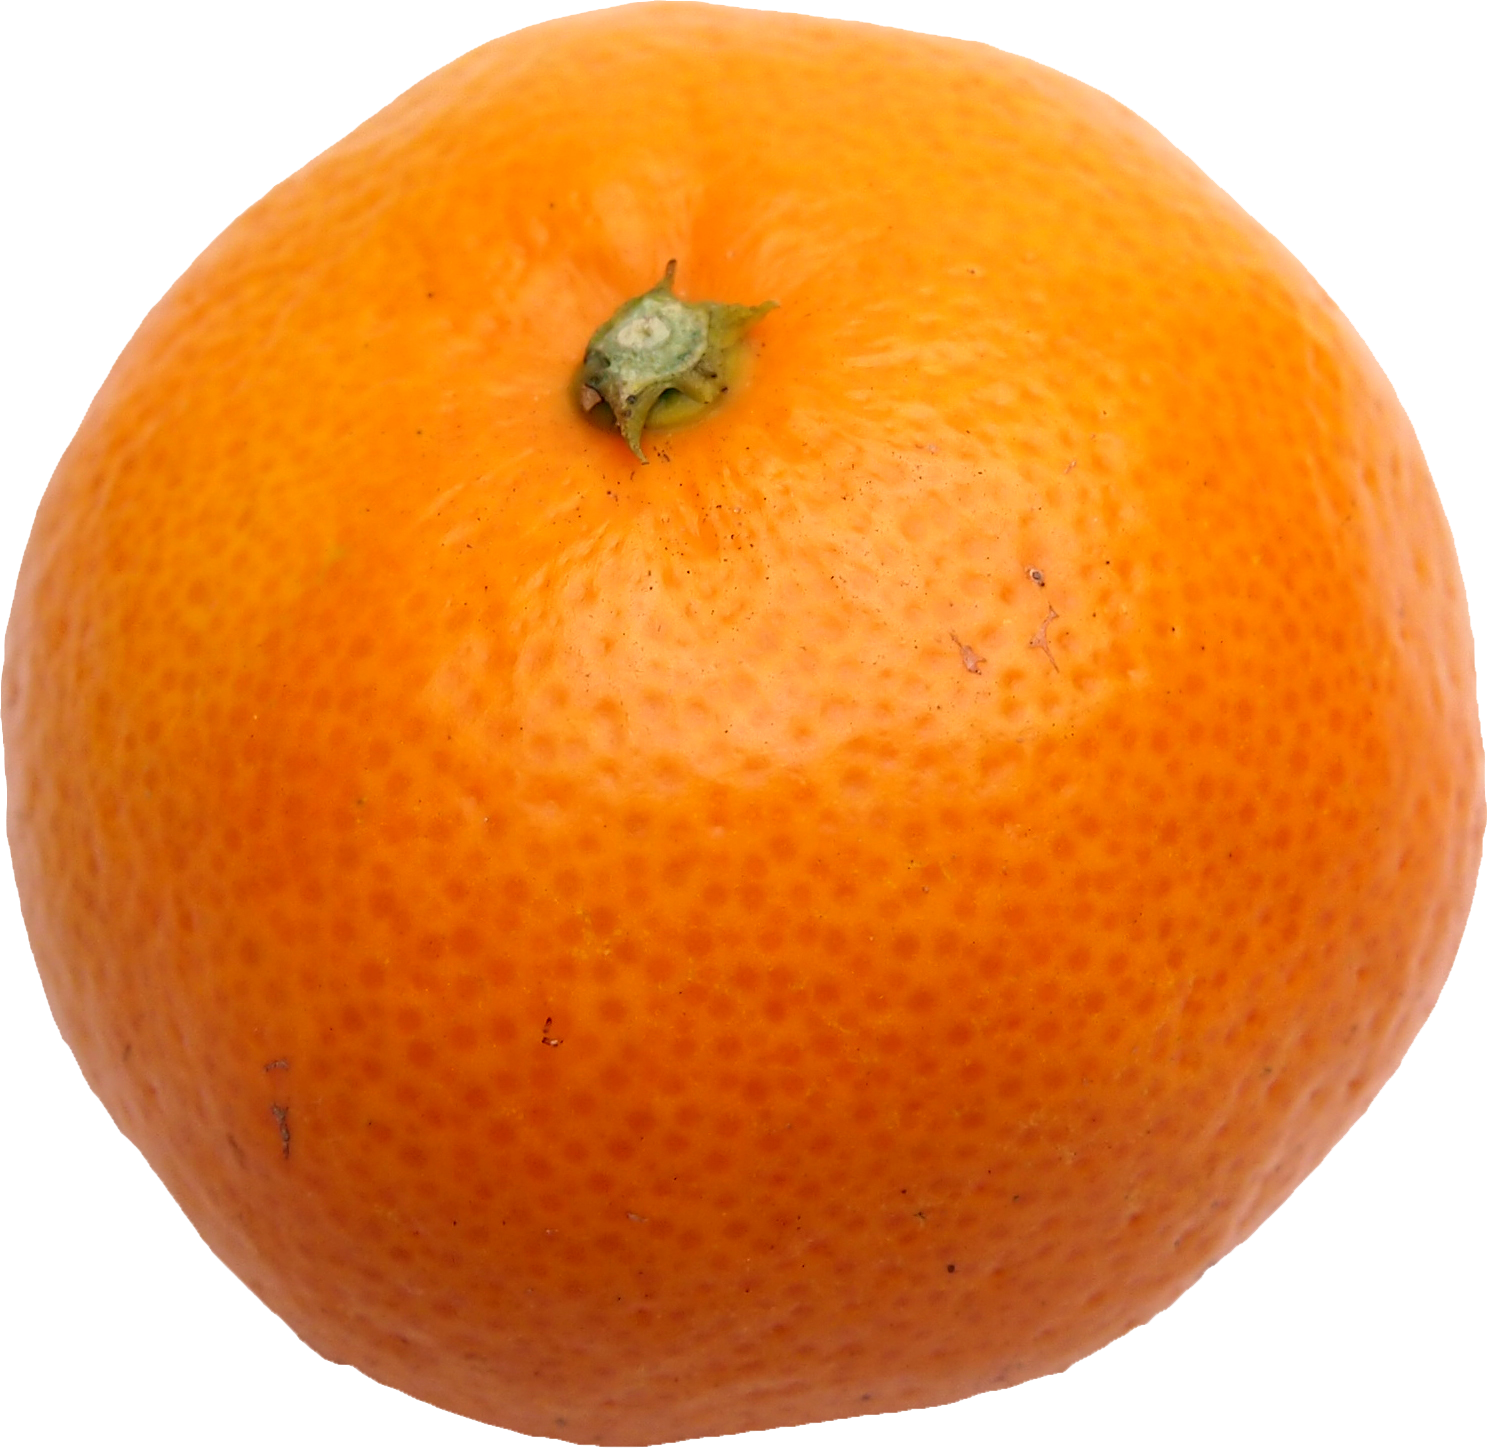 みかん・柑橘のことなら「みかんな図鑑」｜伊藤農園 | 伊藤農園の 